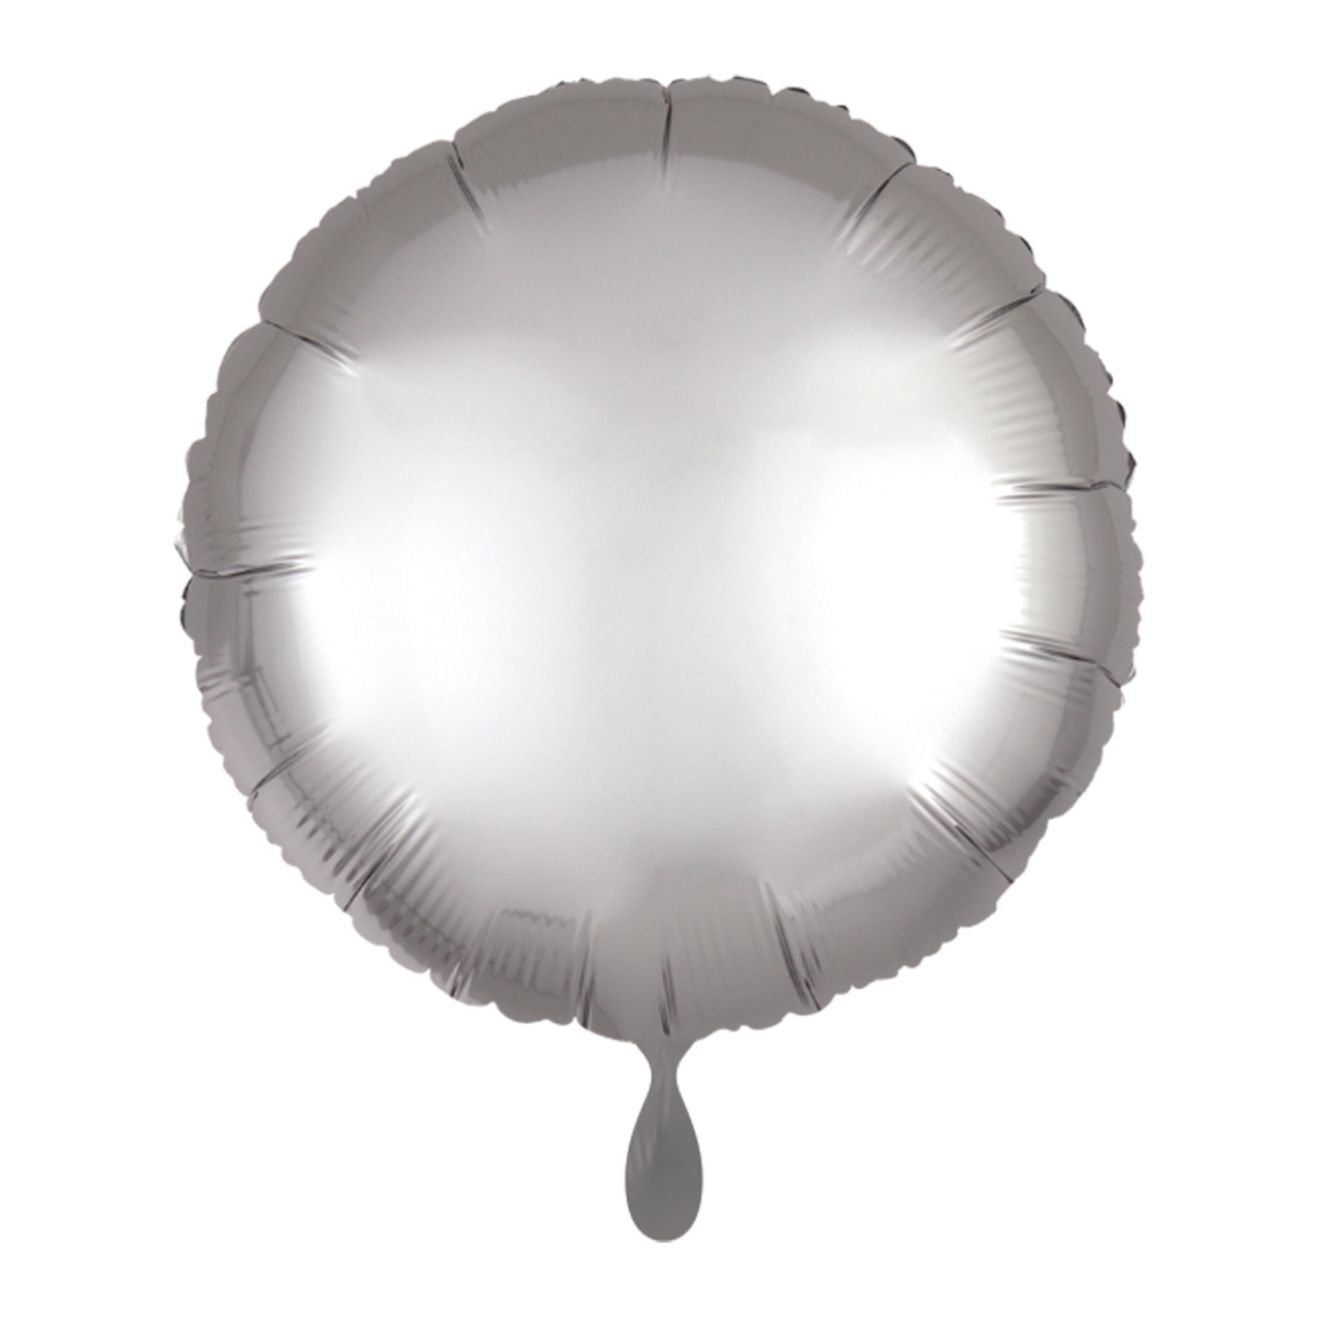 1 Balloon - Rund - Satin - Silber